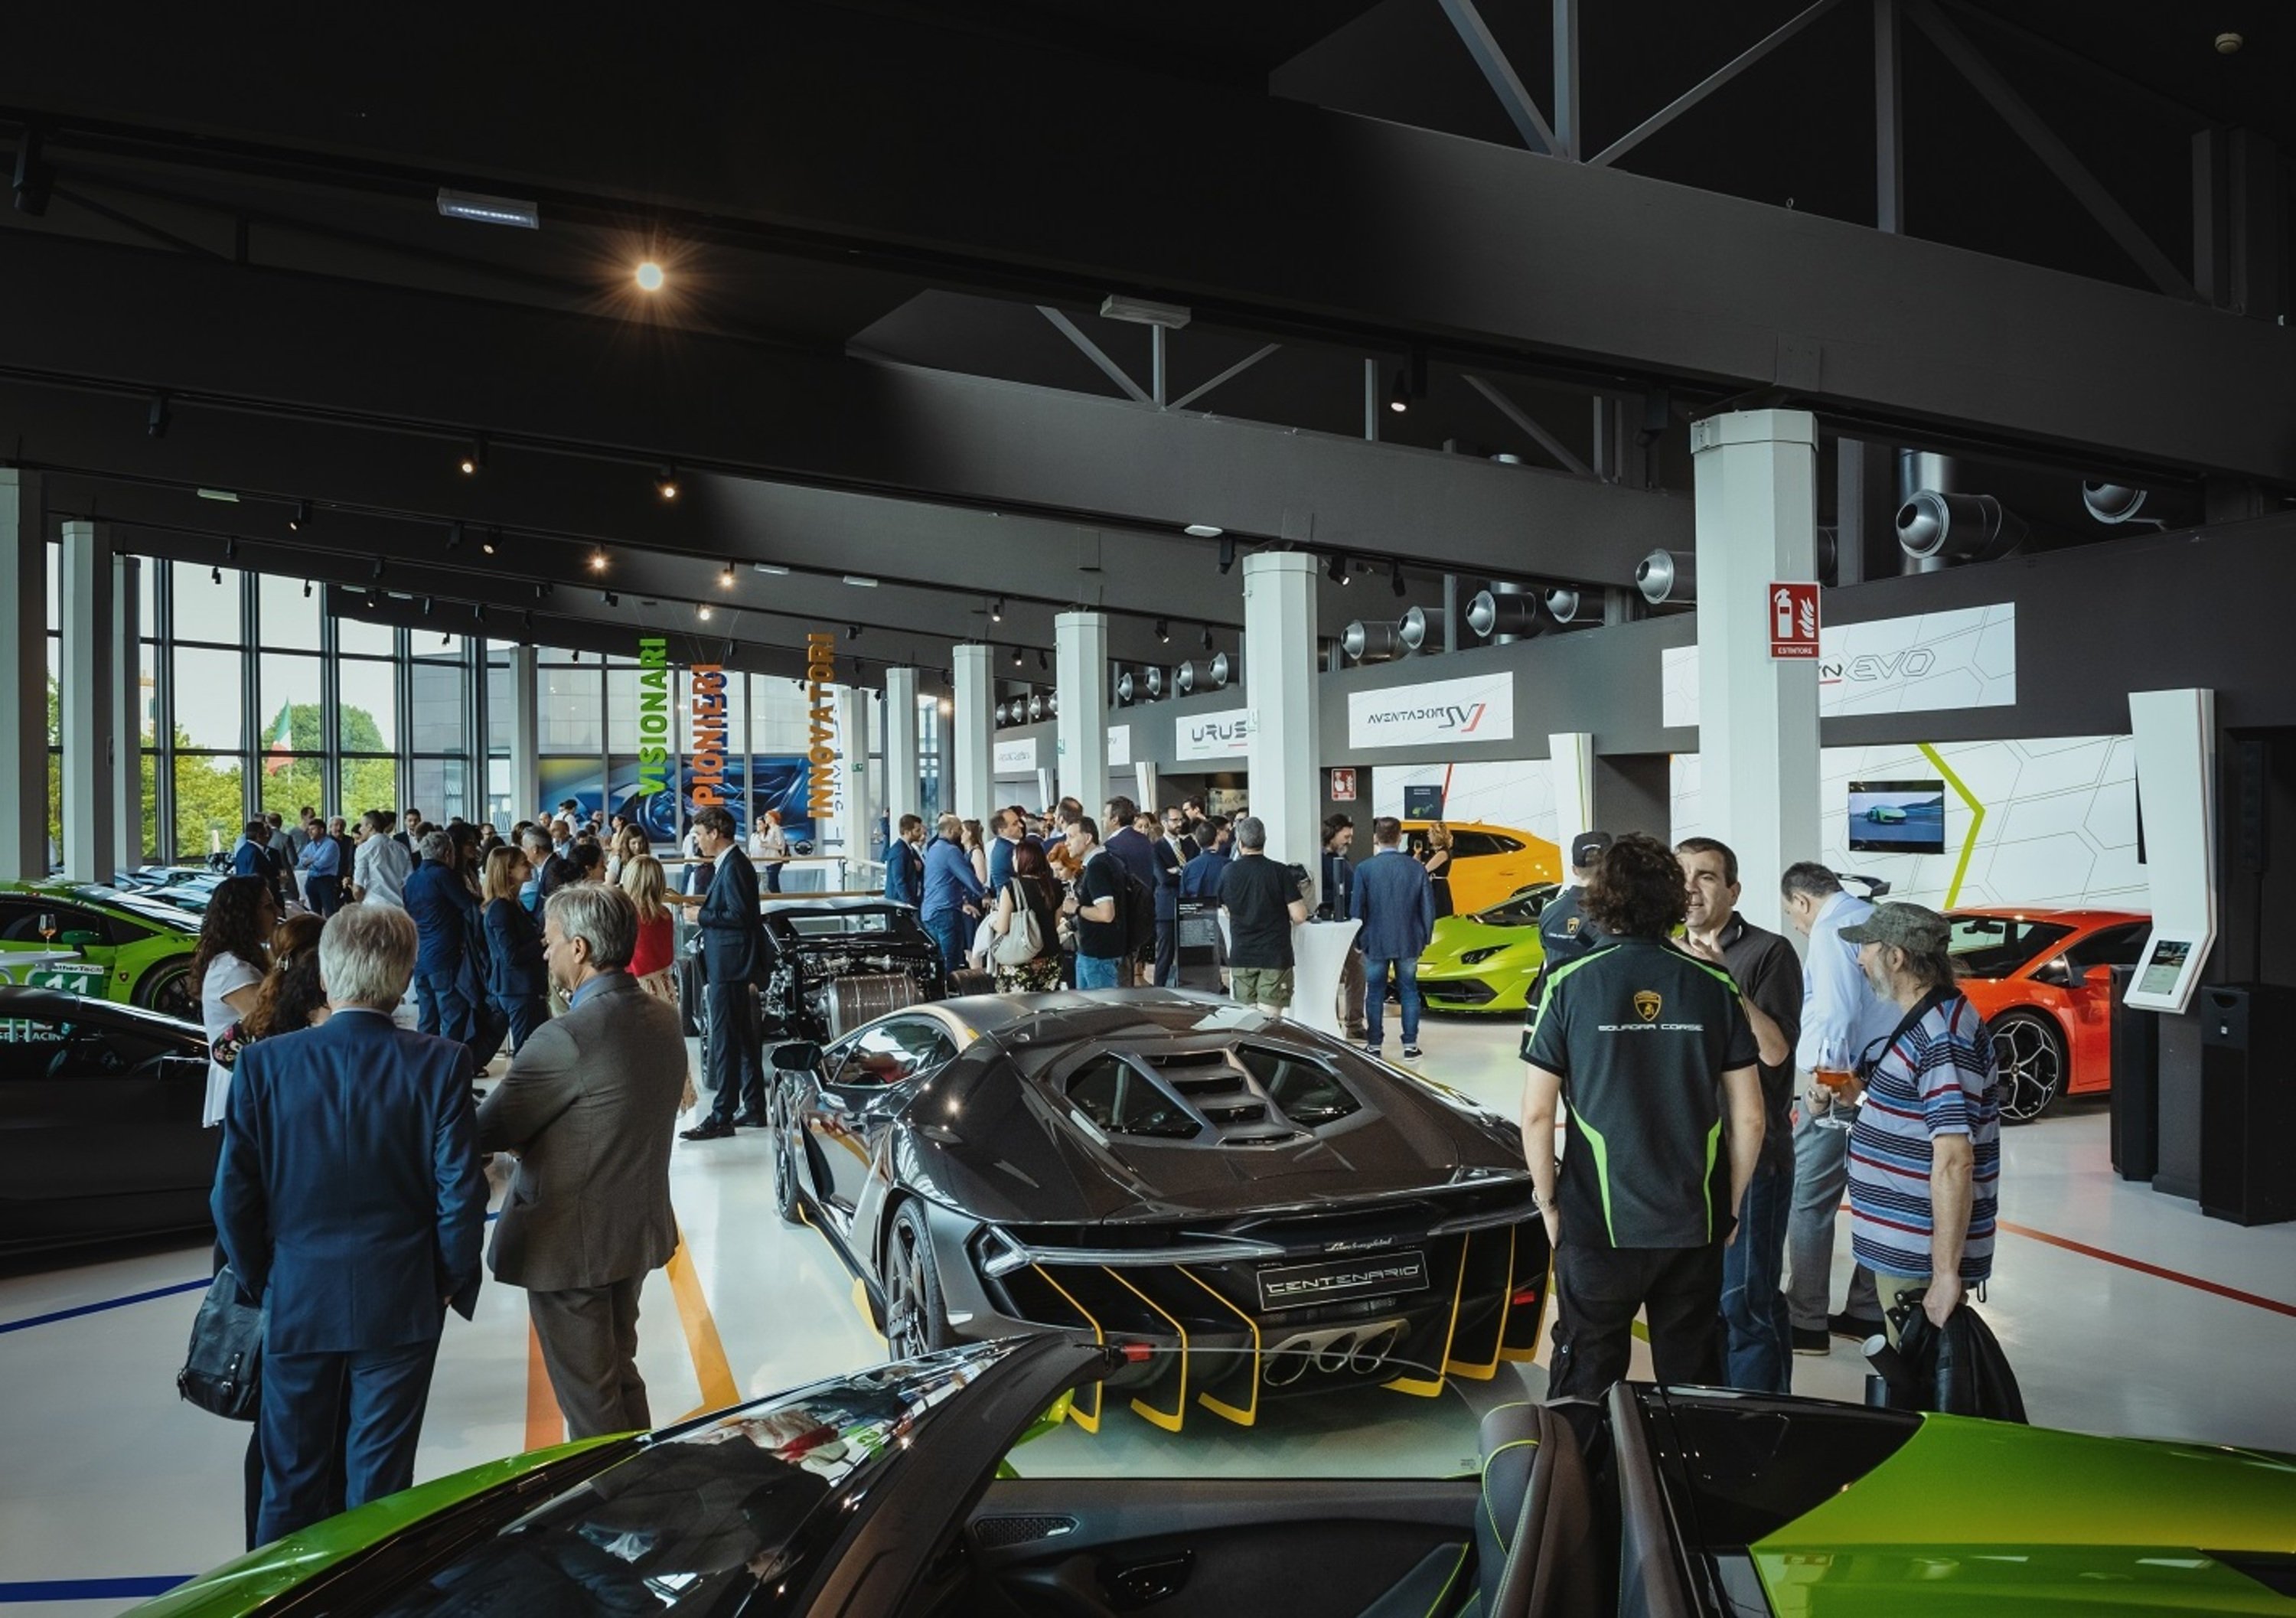 Lamborghini e MuDeTec, il museo delle tecnologie per andare avanti senza scordarsi il passato